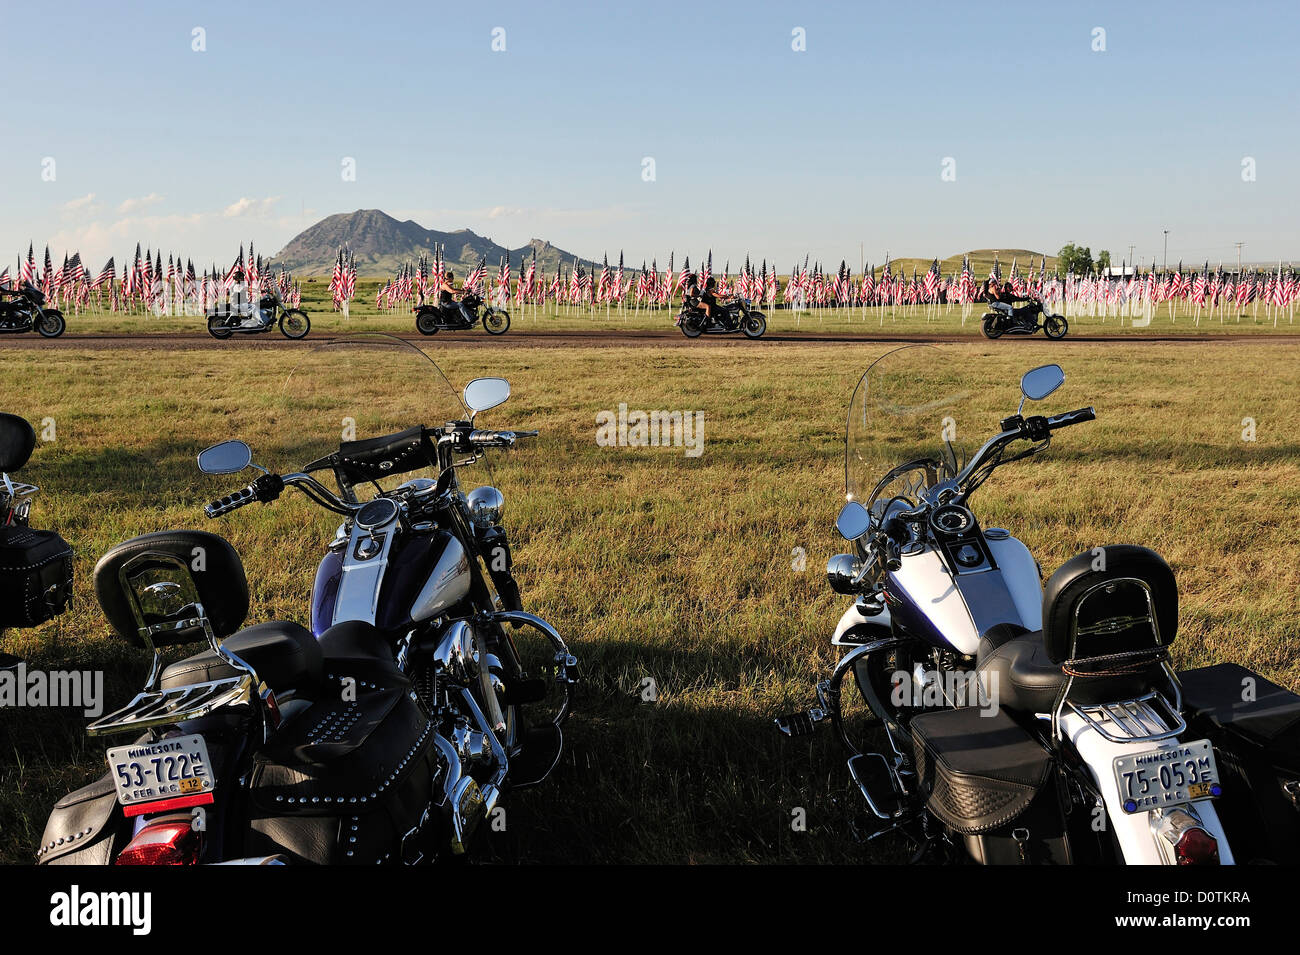 Des drapeaux américains, drapeaux, Harley, Harley Davidson, moto, balade, liberté, herbage, Sturgis, Dakota du Sud, USA, United States, Ameri Banque D'Images